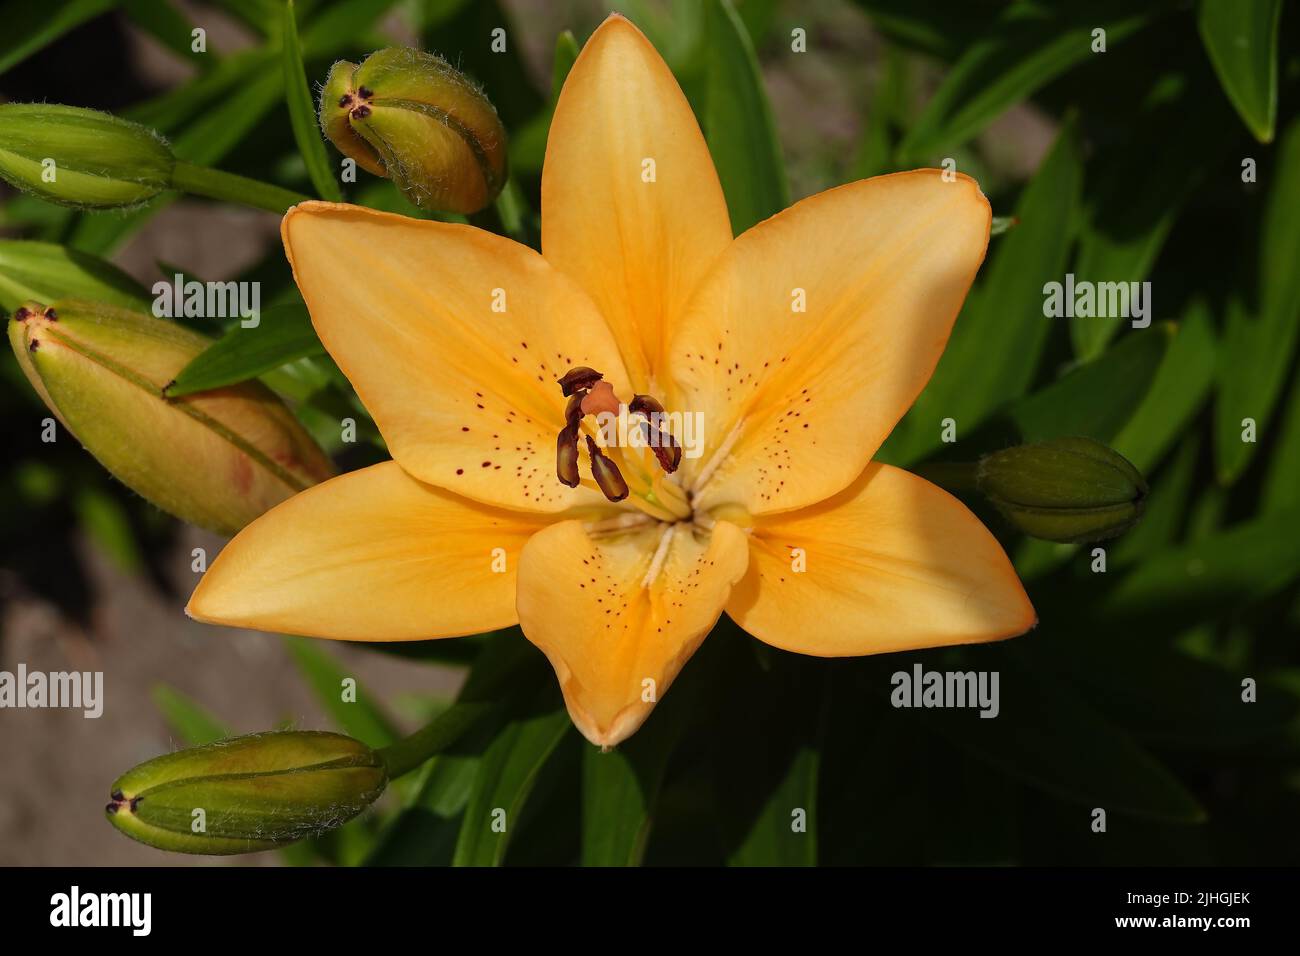 Lilie bulbous ist eine mehrjährige krautige Pflanze der Familie der Liliengewächse. Stockfoto